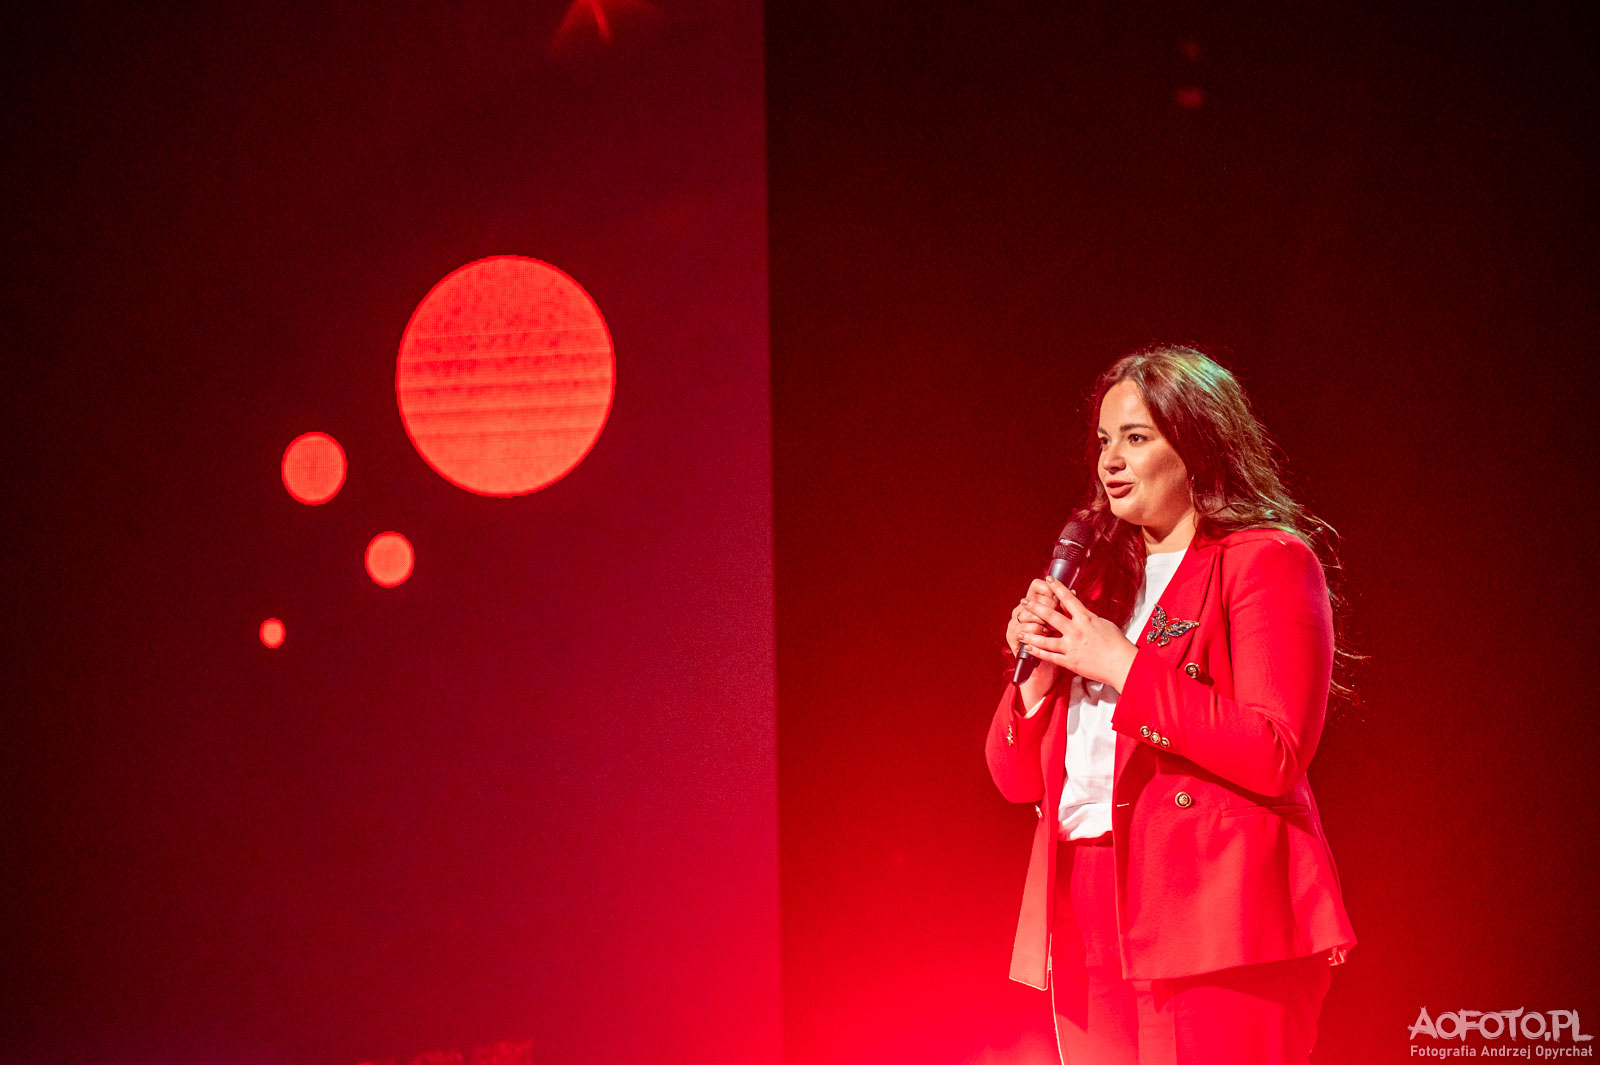 TedX Talks Kraków